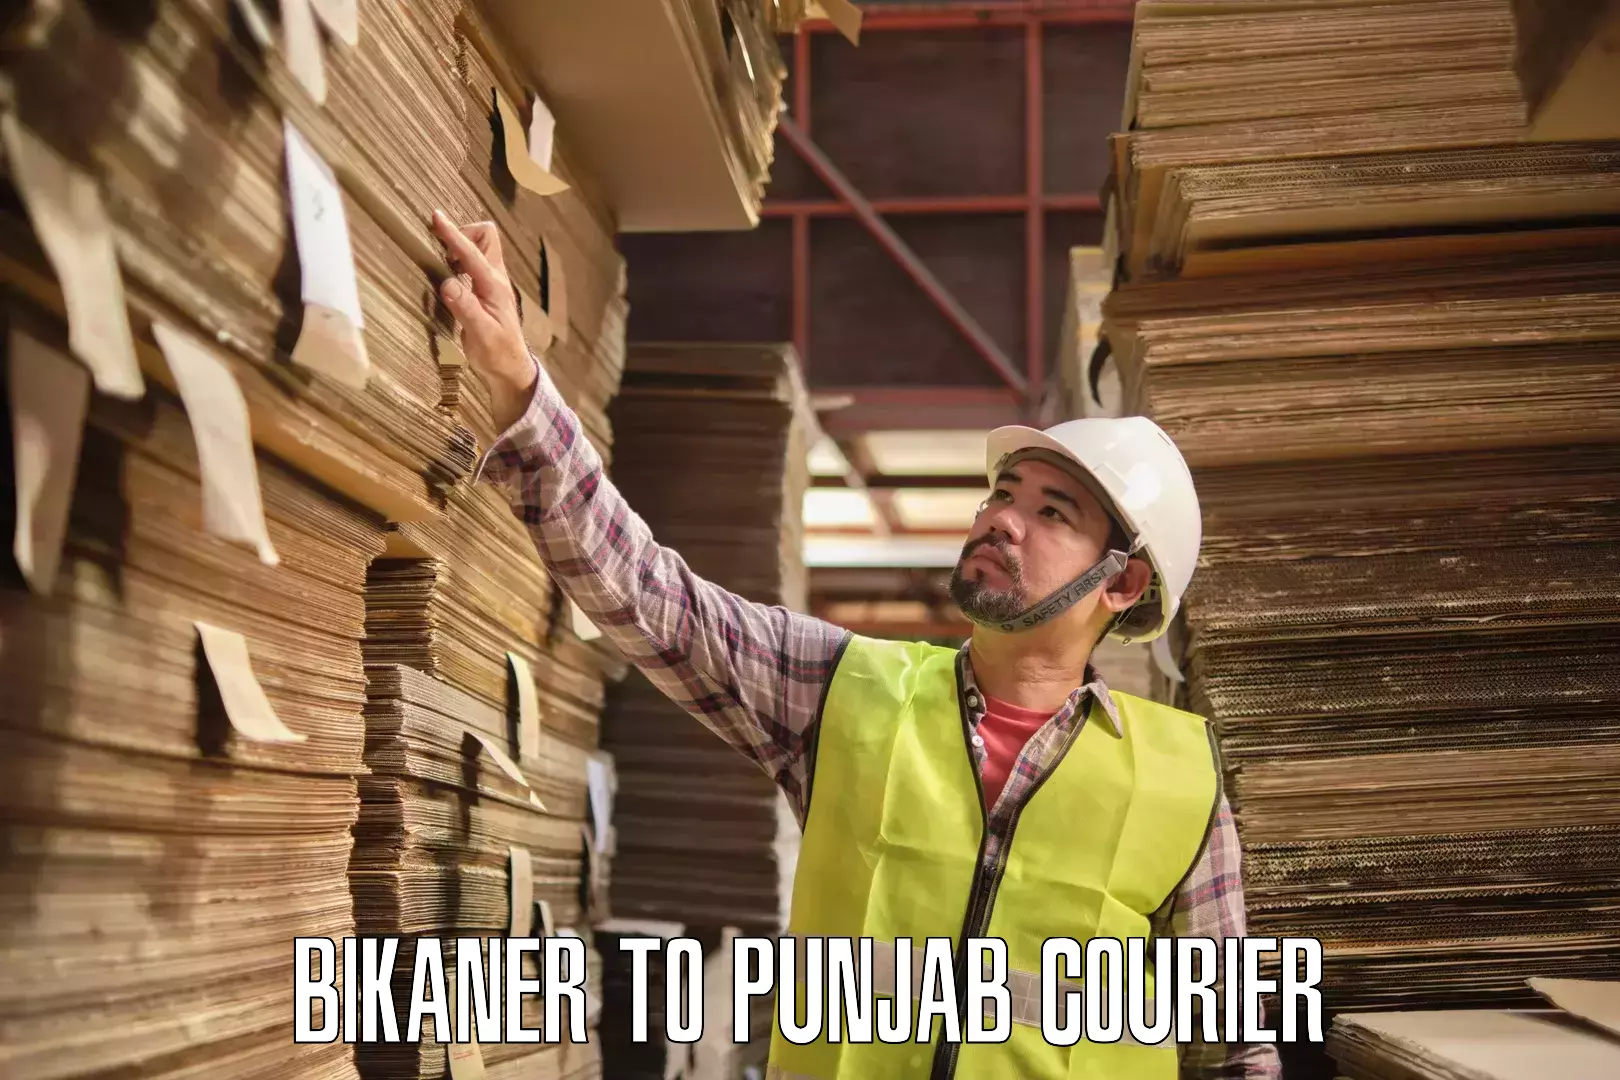 Lightweight courier Bikaner to Ludhiana